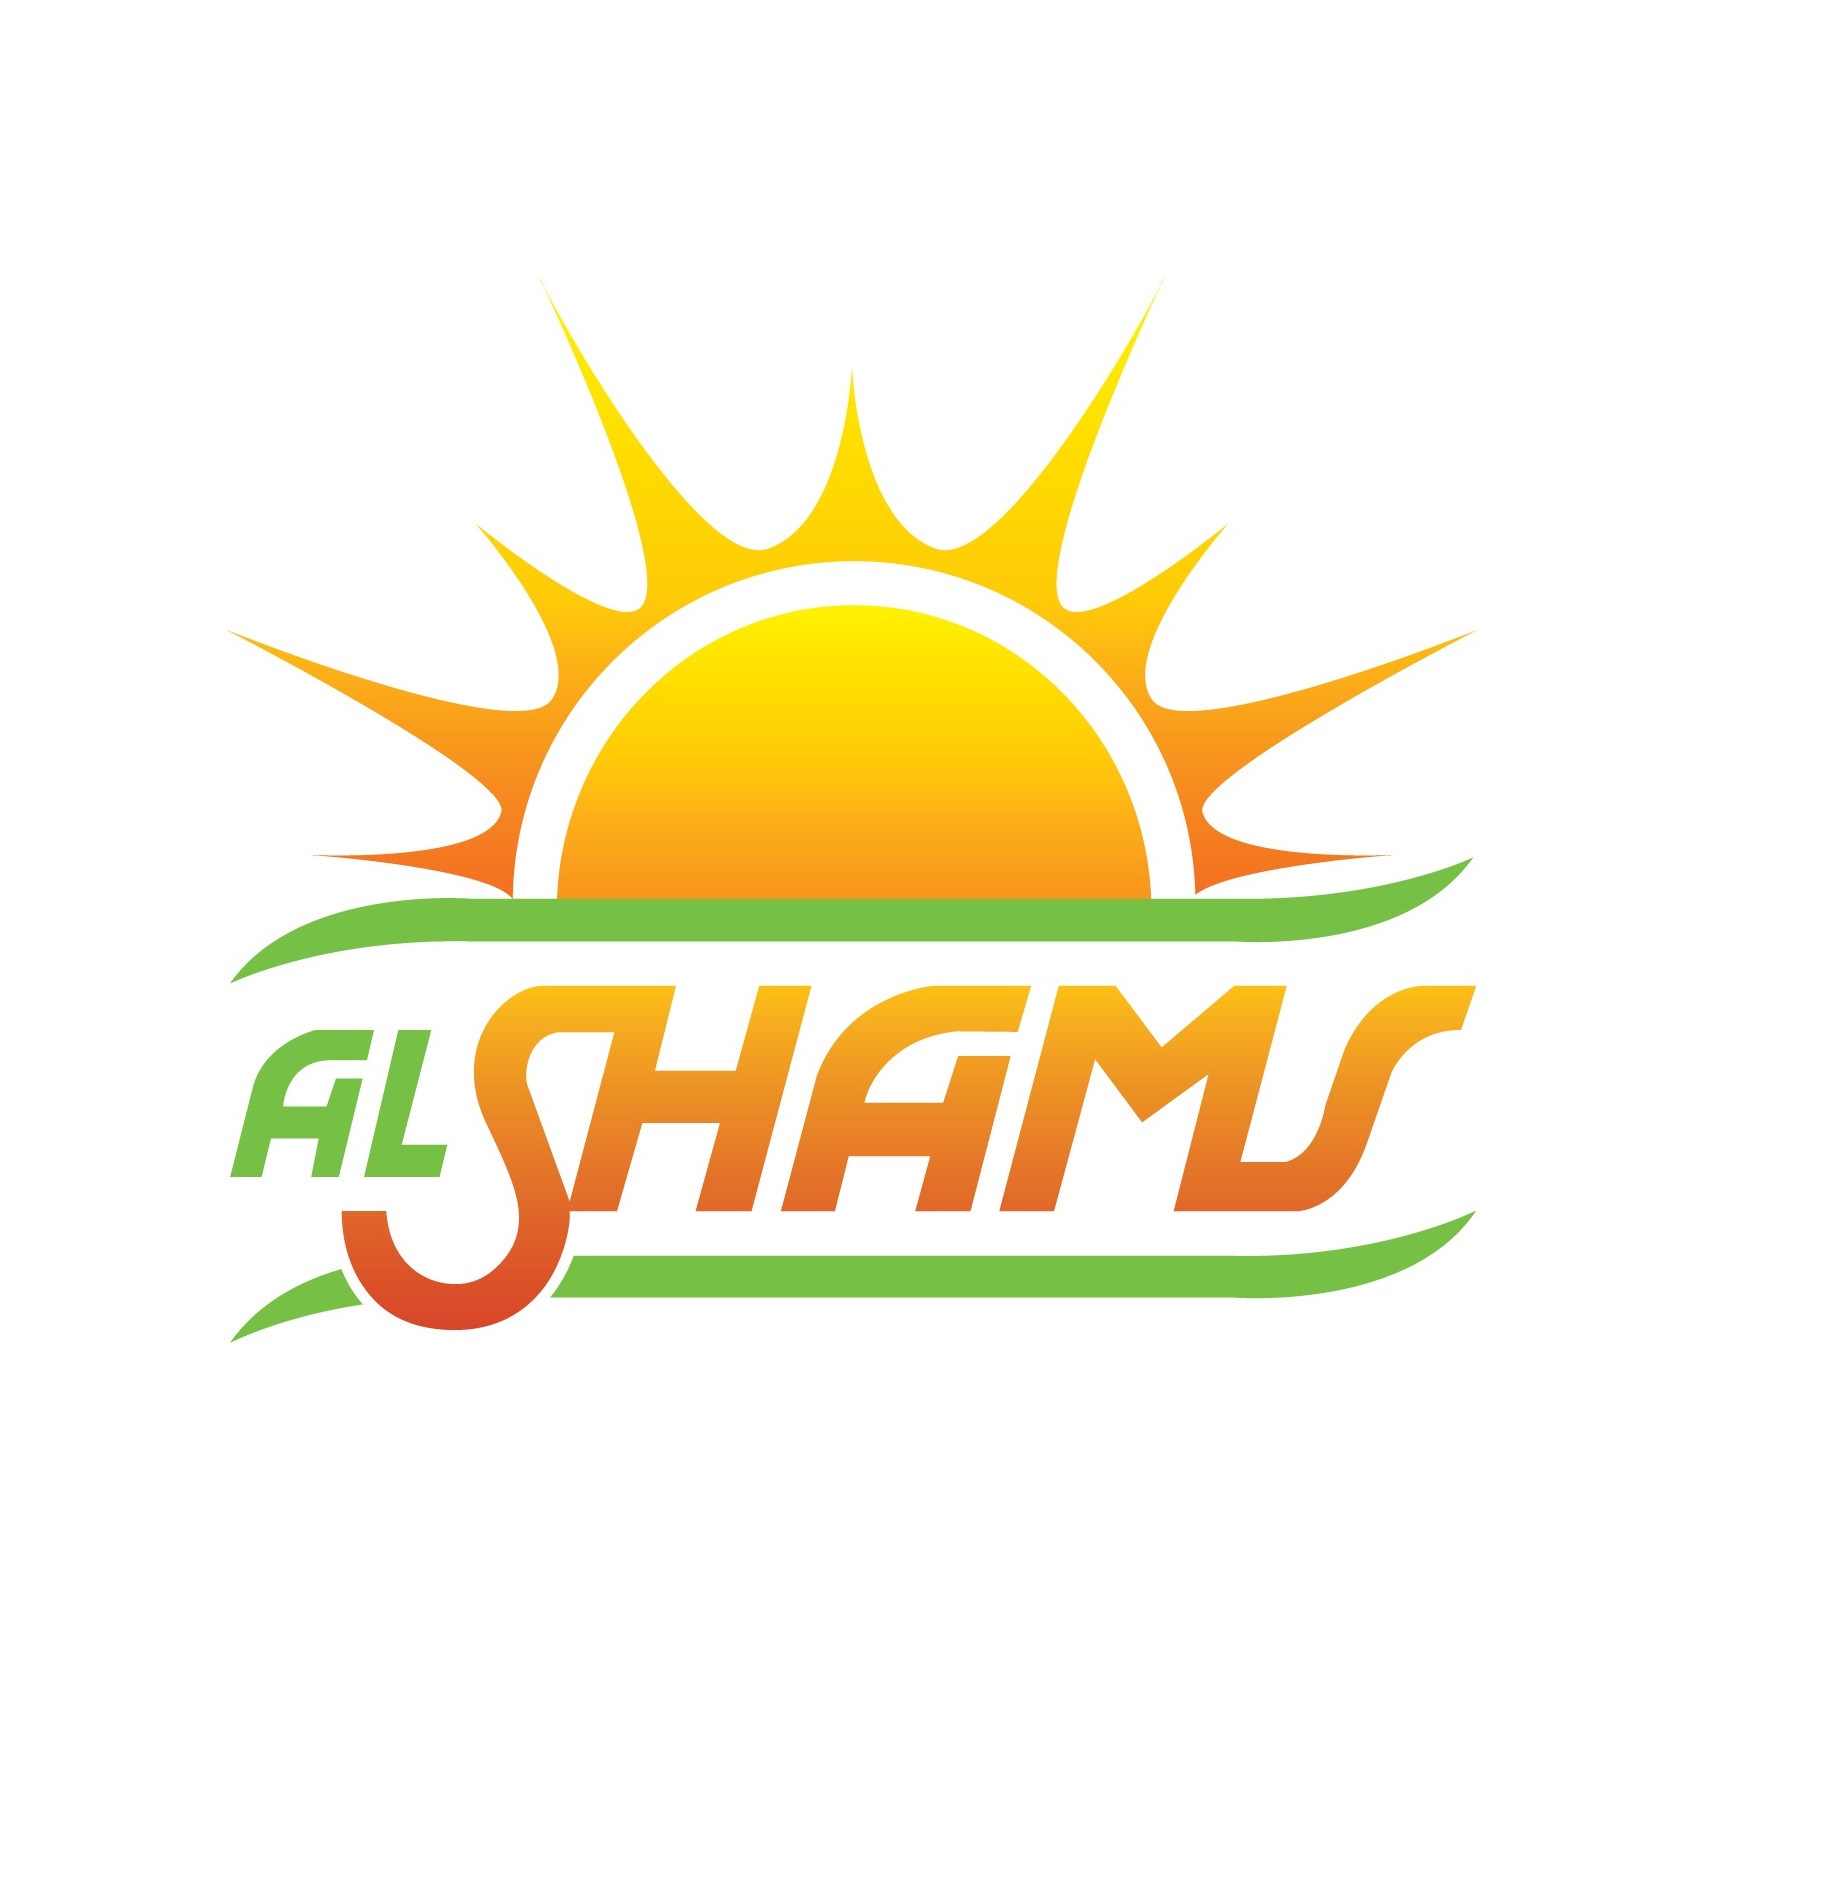 Al-shams